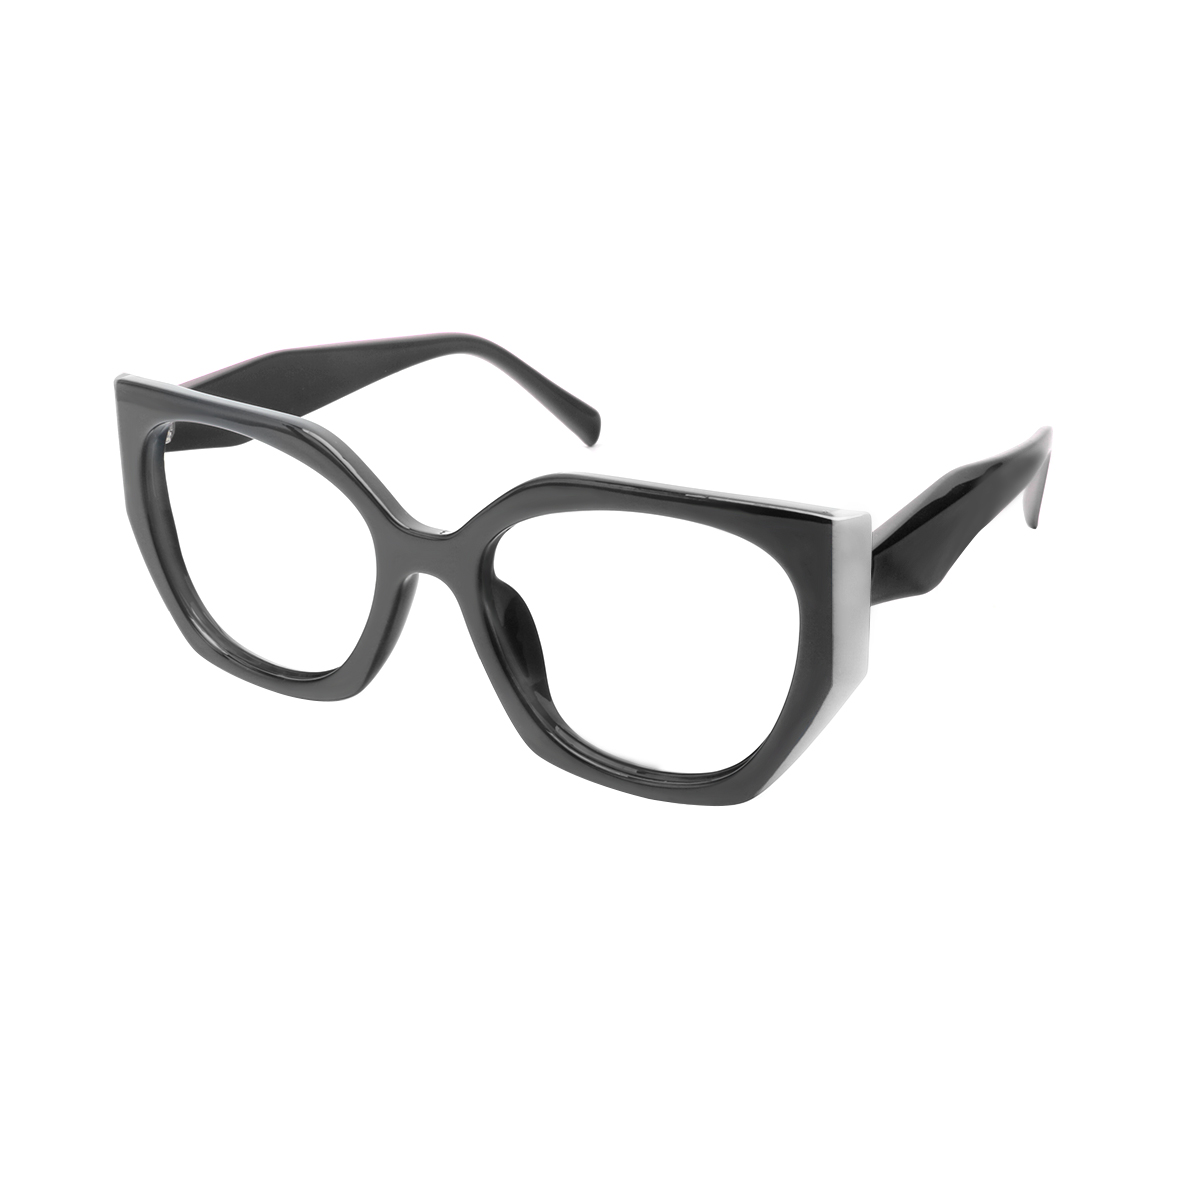 Cilicia - Geometric White Reading Glasses for Men & Women